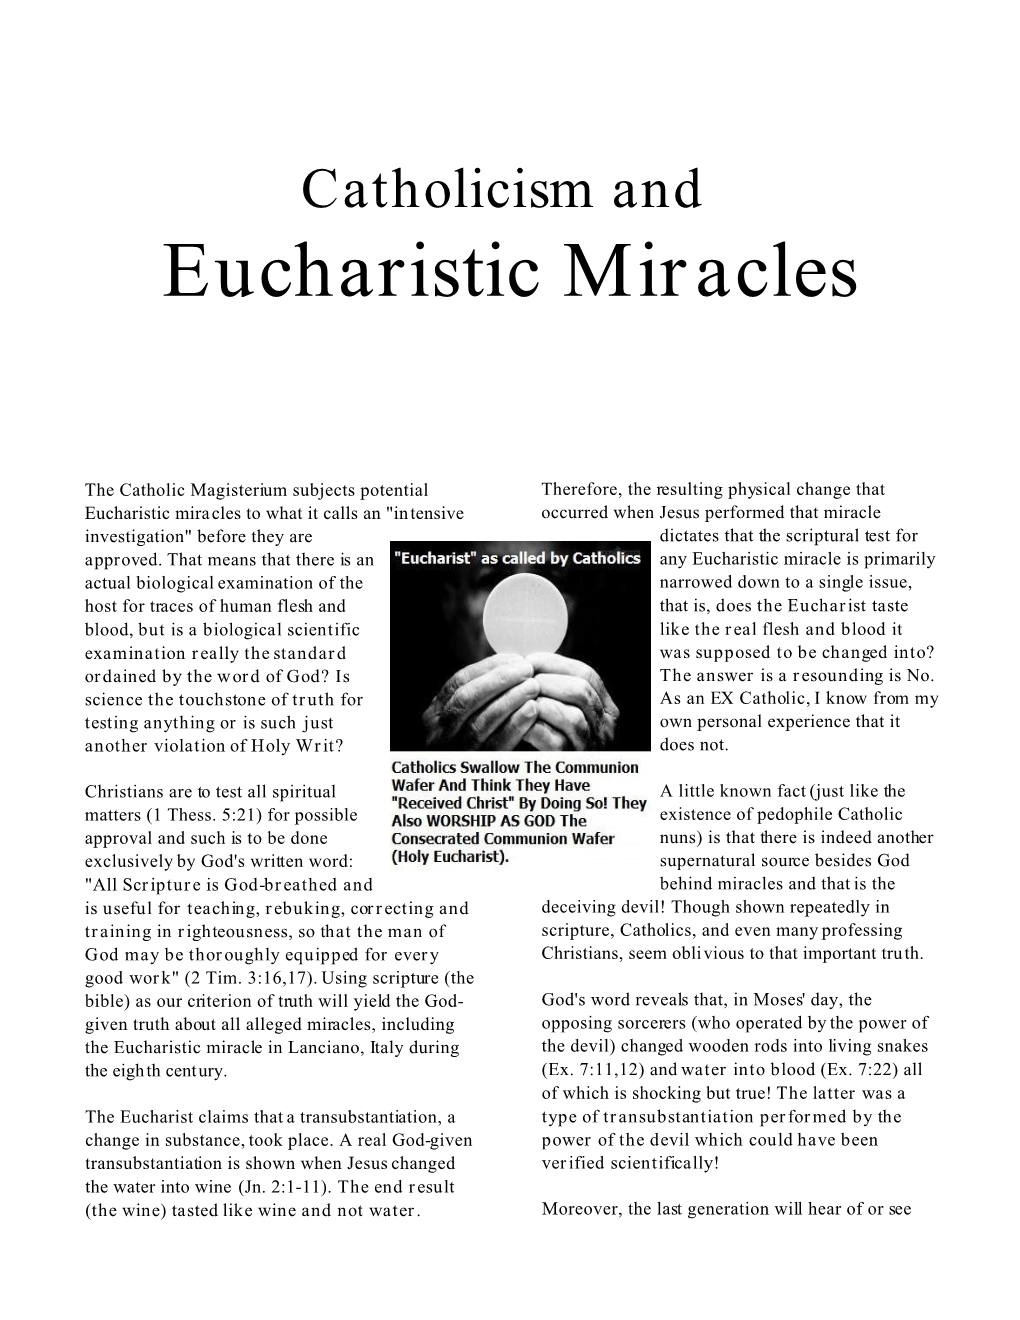 Eucharistic Miracles Disproven